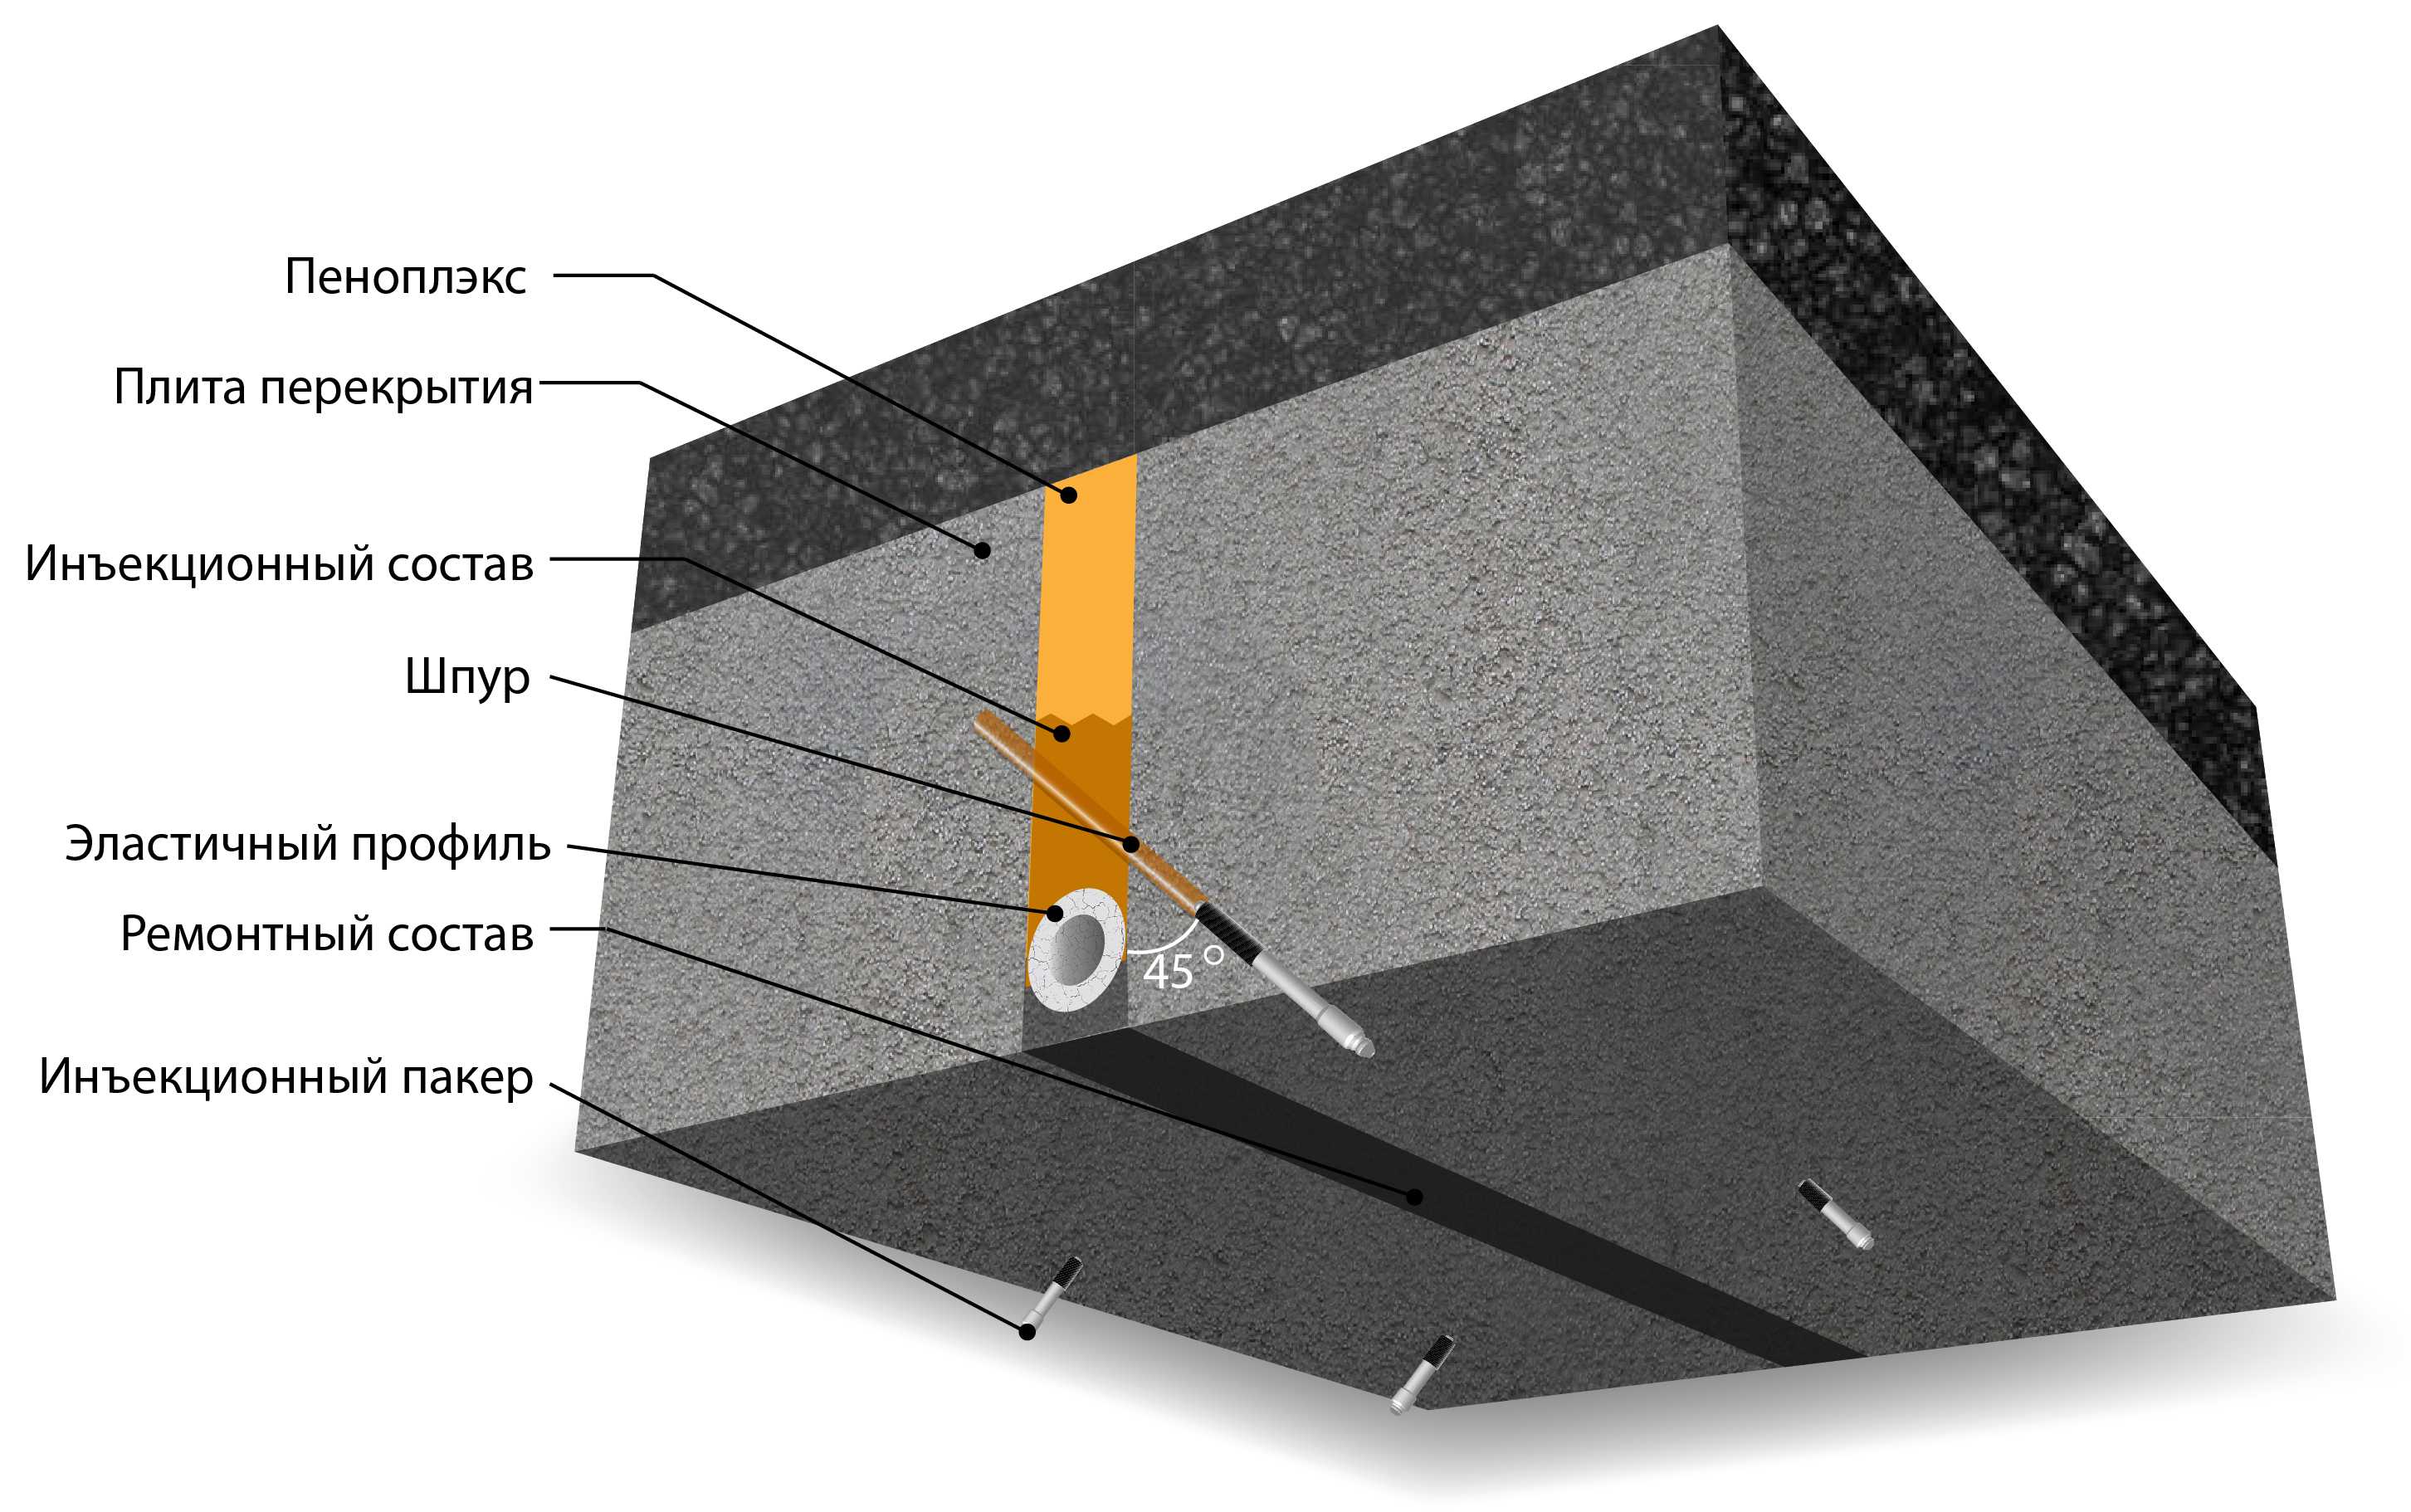 Ттк. нарезка деформационных швов в бетонном покрытии пола с их последующей герметизацией